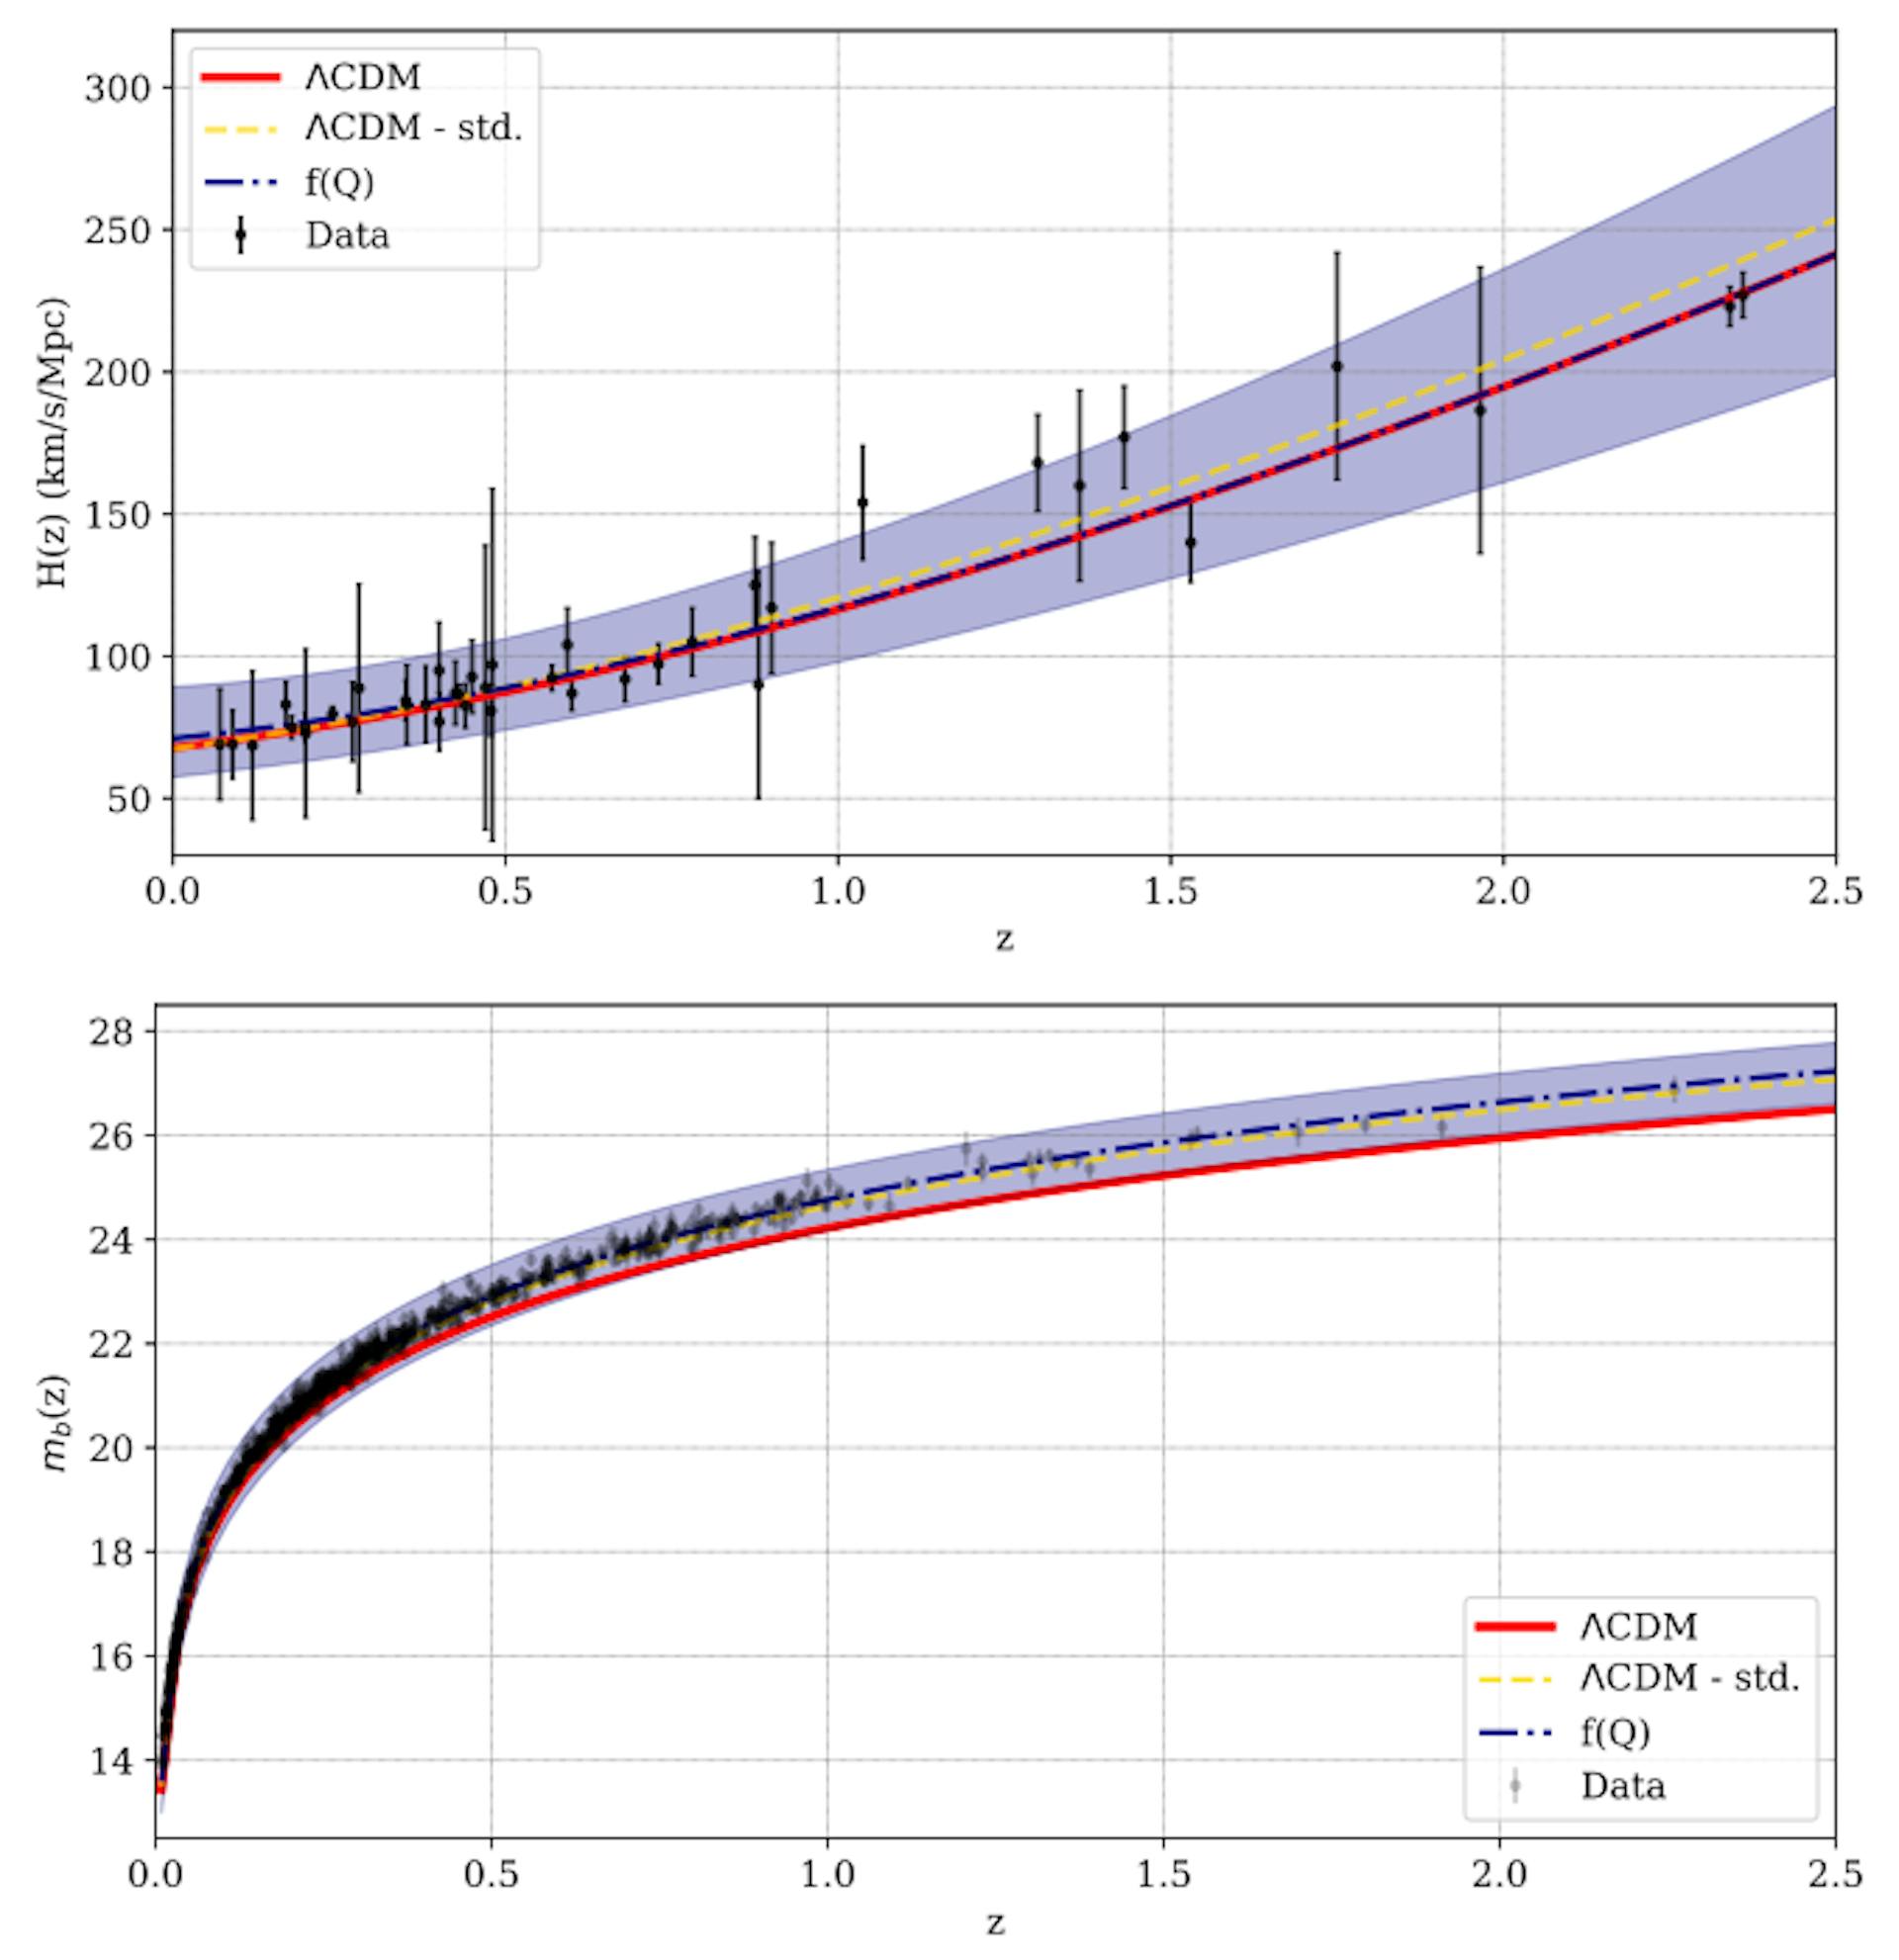 Hình 6: Sự phát triển của tham số Hubble (trên cùng) và cường độ SN (dưới cùng) với độ dịch chuyển đỏ, z, như được dự đoán cho mô hình f(Q) được trình bày trong tác phẩm này (màu xanh lam có nét đứt), so với dữ liệu quan sát (màu đen) các dấu chấm có đường thẳng đứng biểu thị độ không đảm bảo). Sự phát triển được dự đoán theo mô hình ΛCDM (đỏ hoàn toàn và vàng nét đứt) cũng được hiển thị để so sánh, như được trình bày chi tiết trong văn bản.